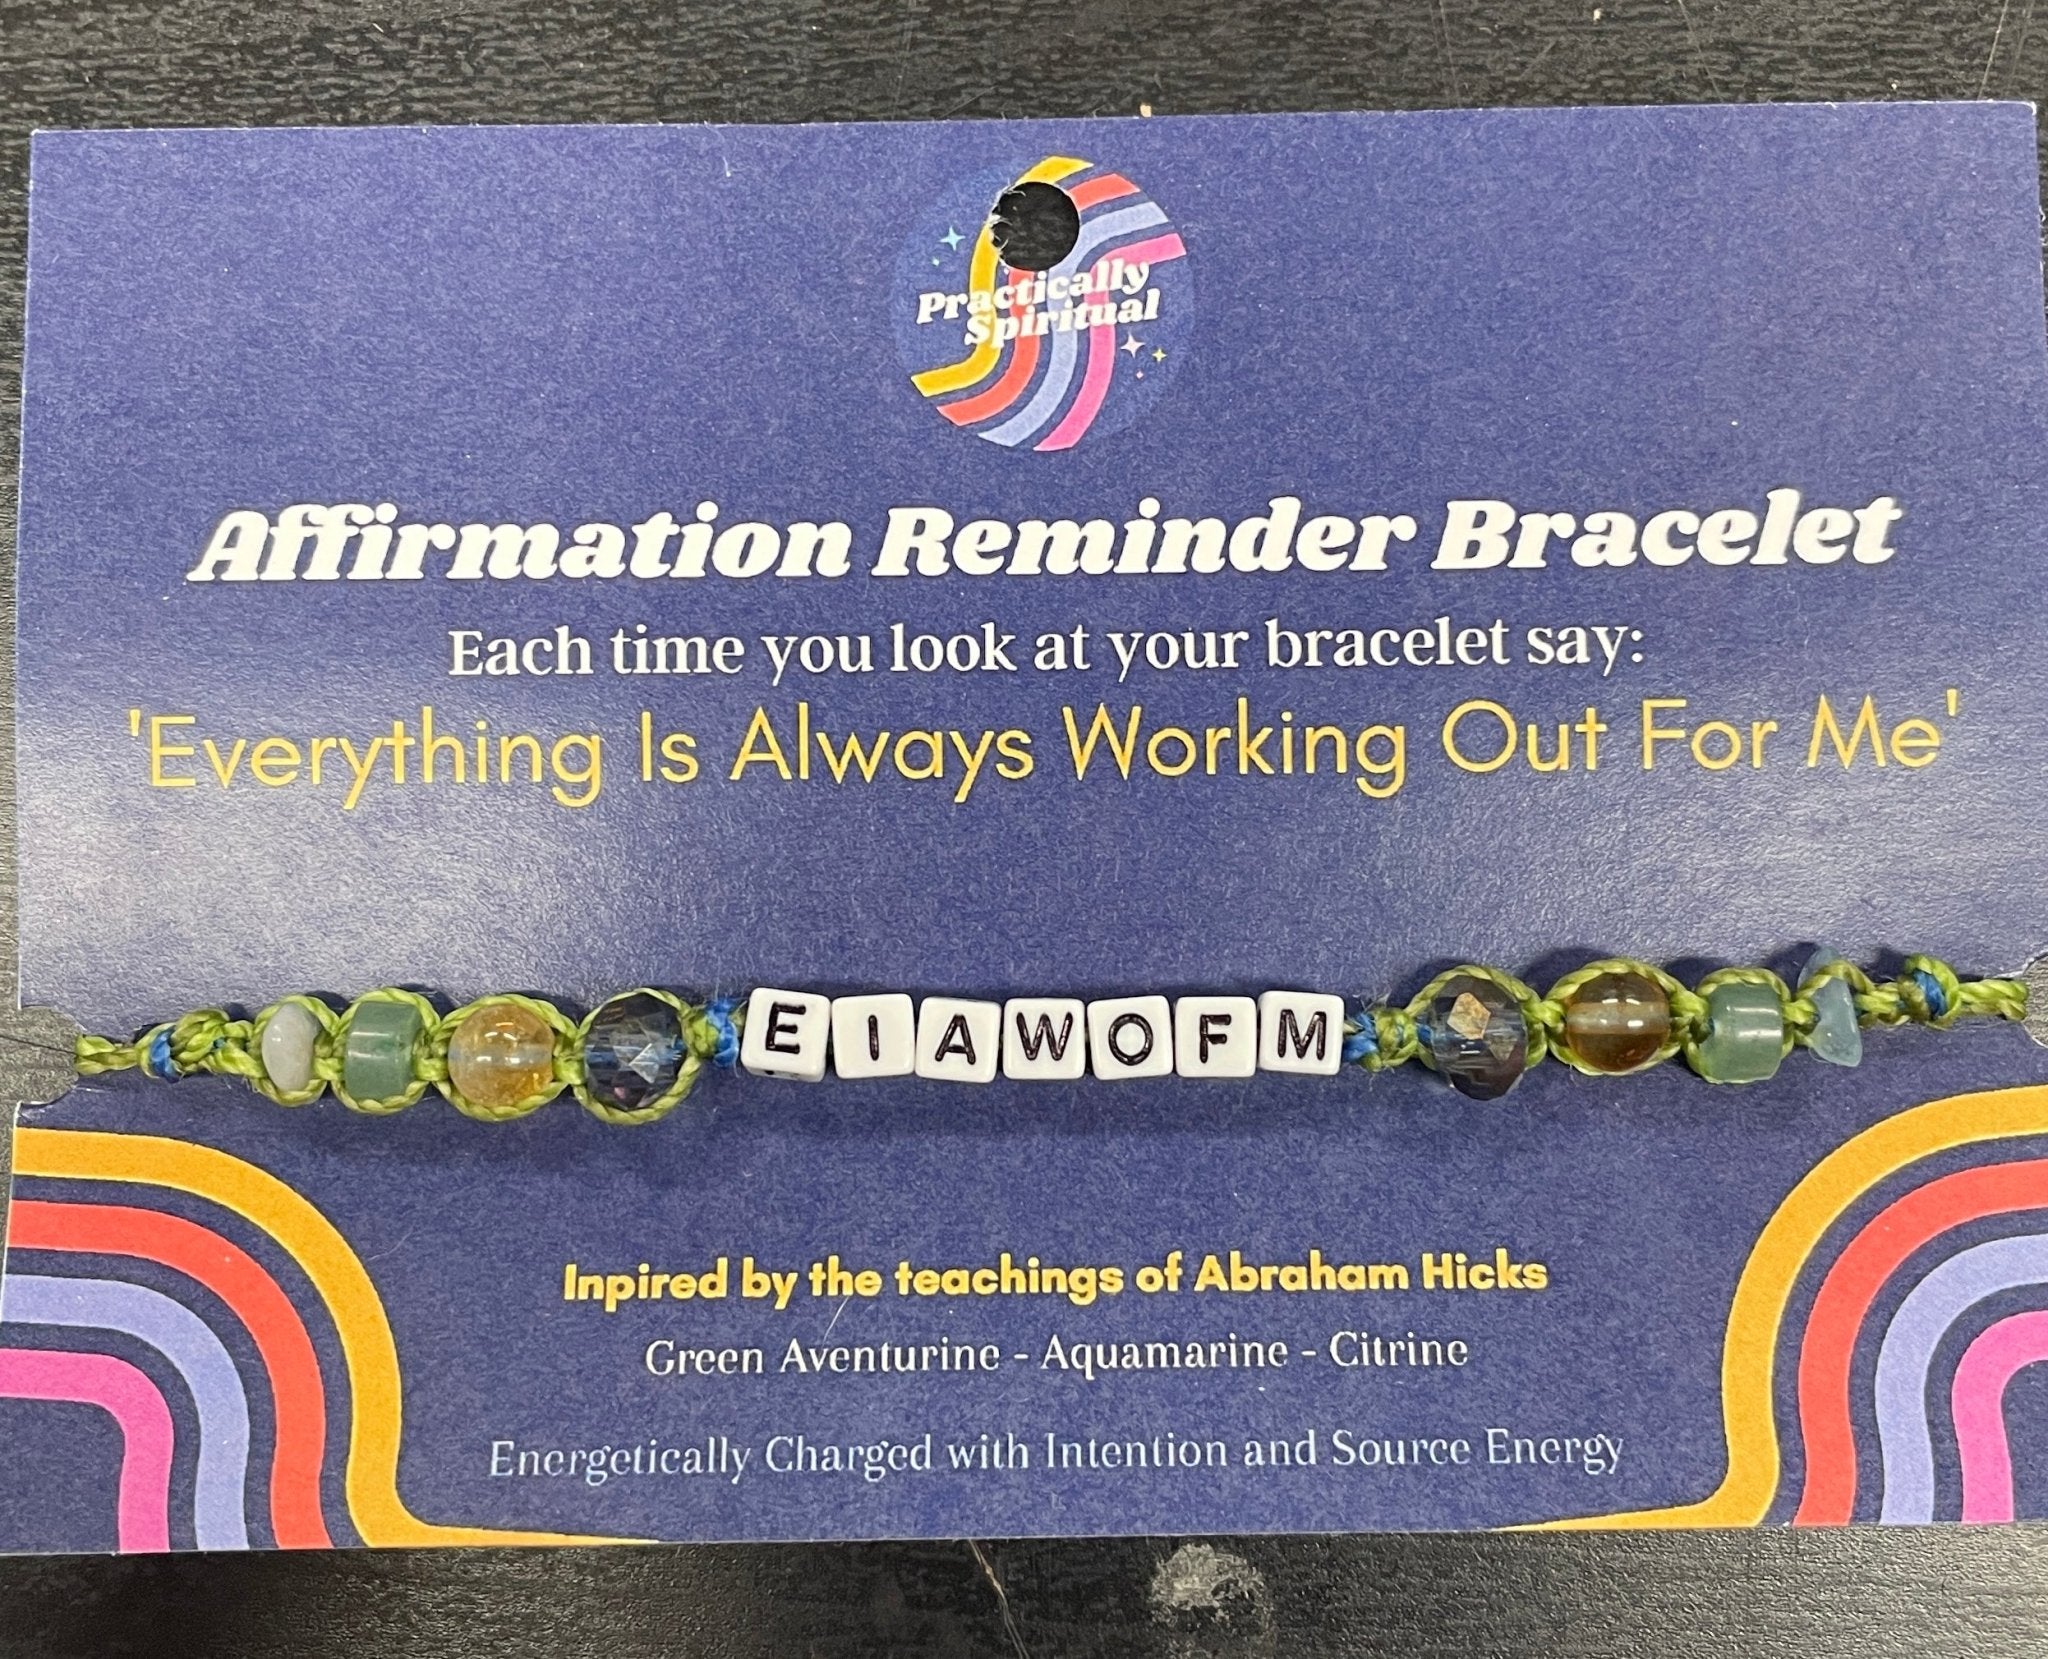 I AM Affirmation Reminder Bracelet - Spiral Circle